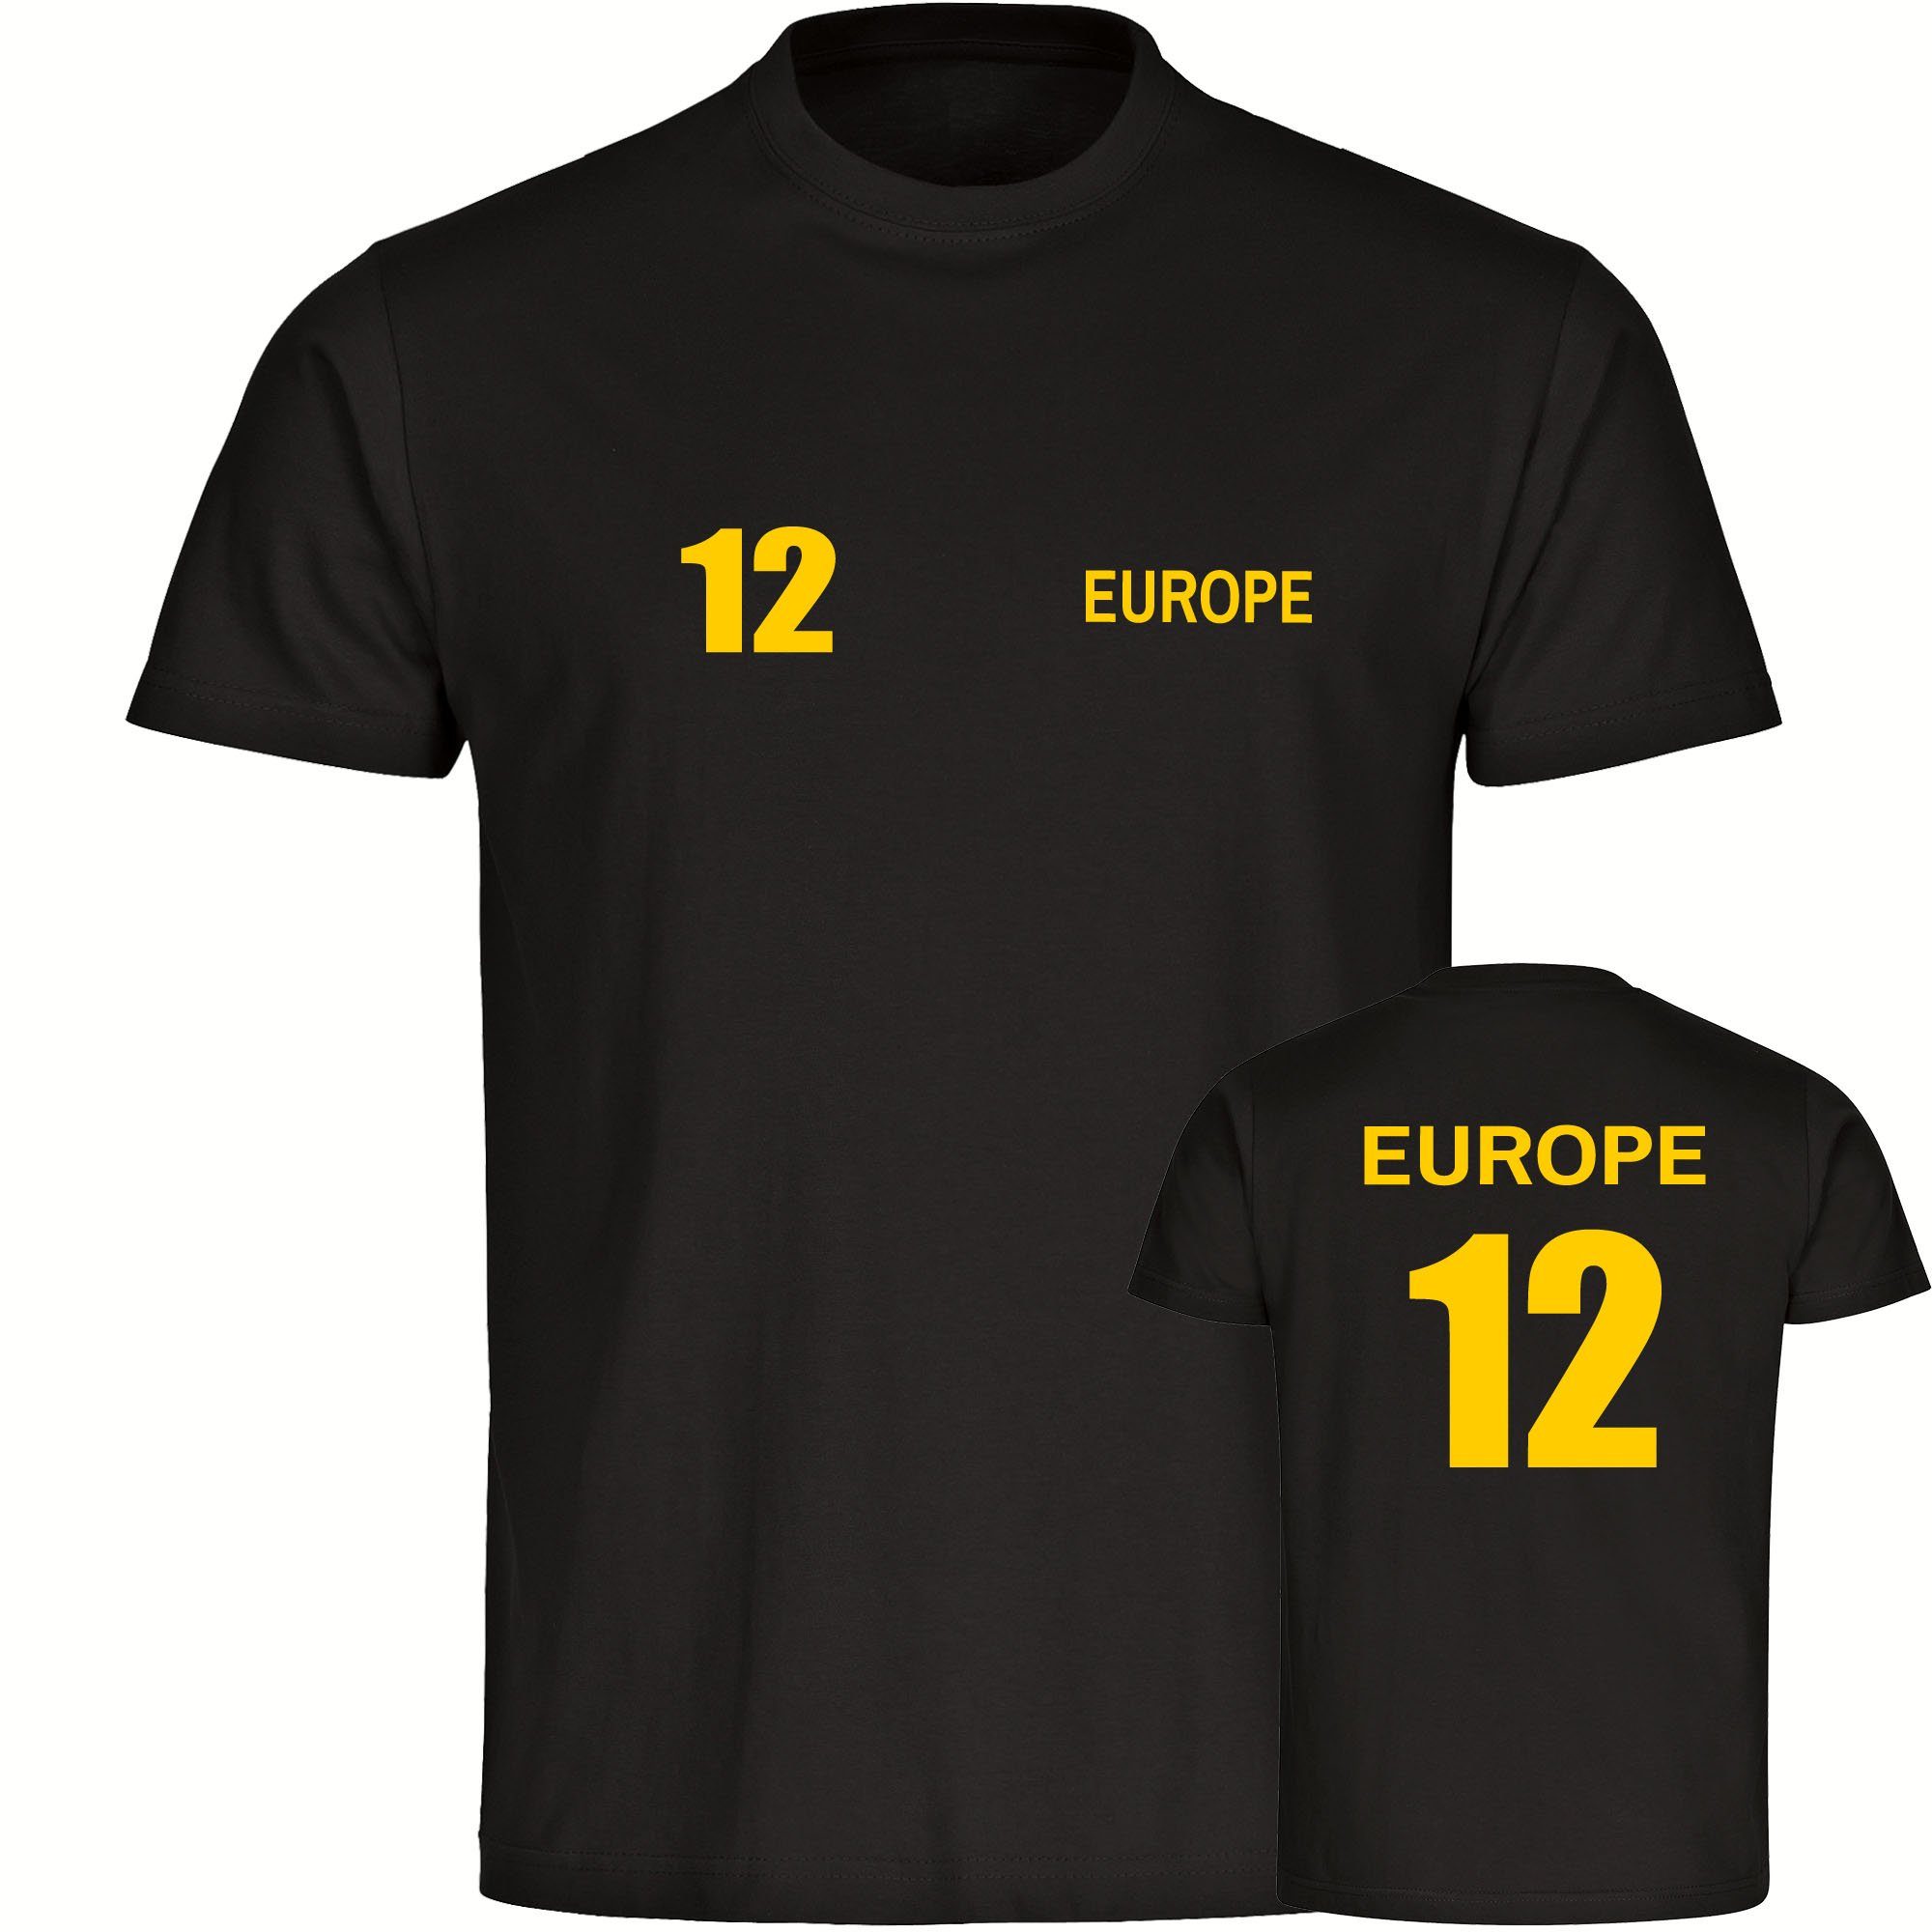 multifanshop T-Shirt Herren Europe - Trikot 12 - Männer